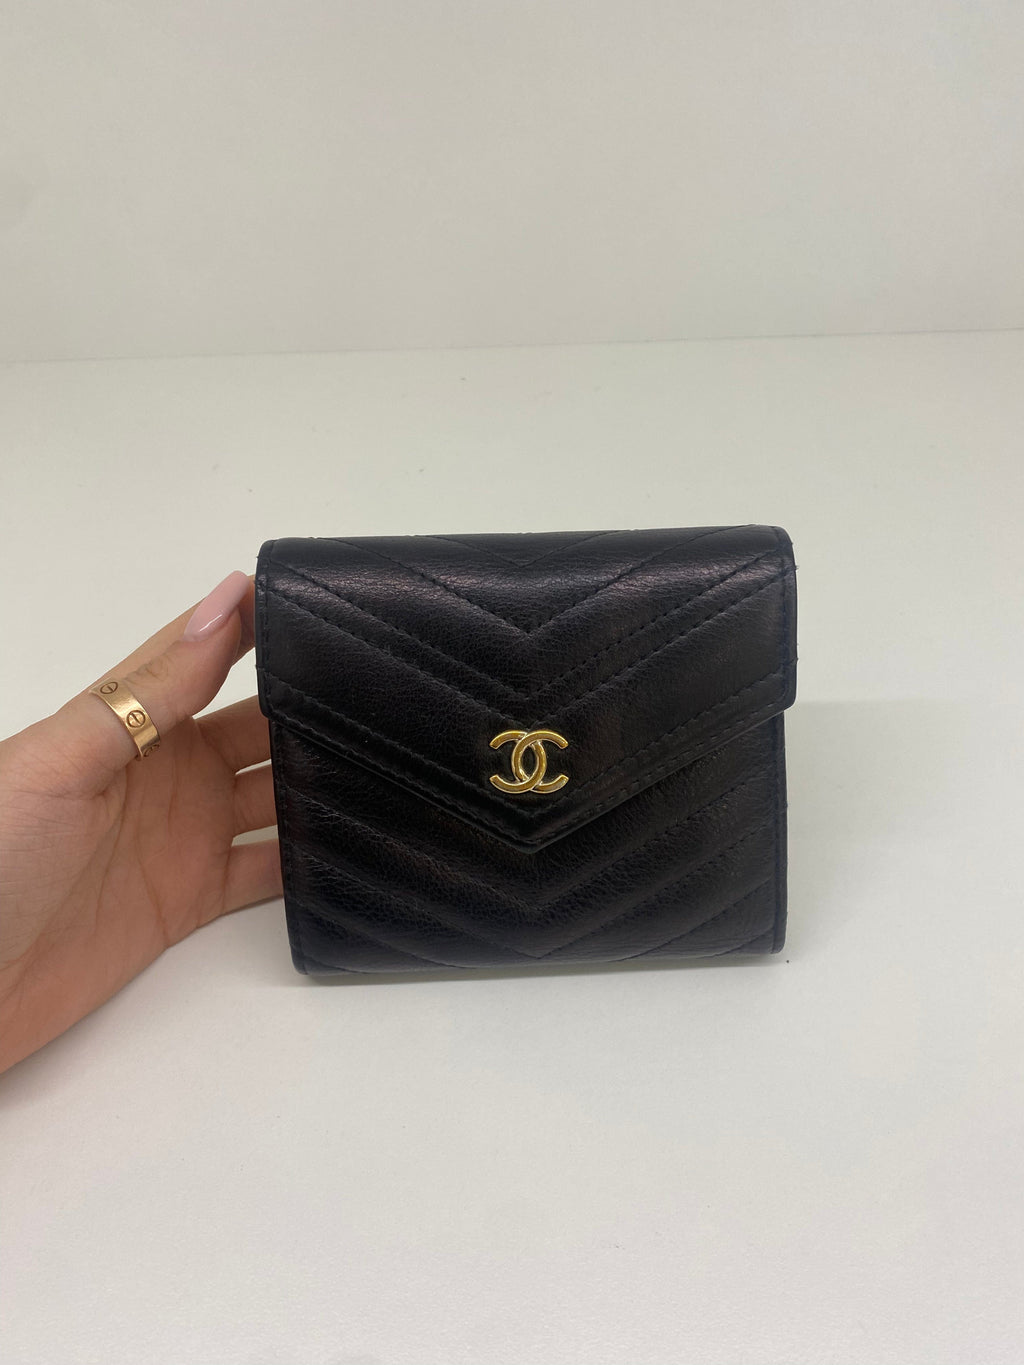 Chanel Small Flap Wallet Lambskin Beige GHW  Laulay Luxury